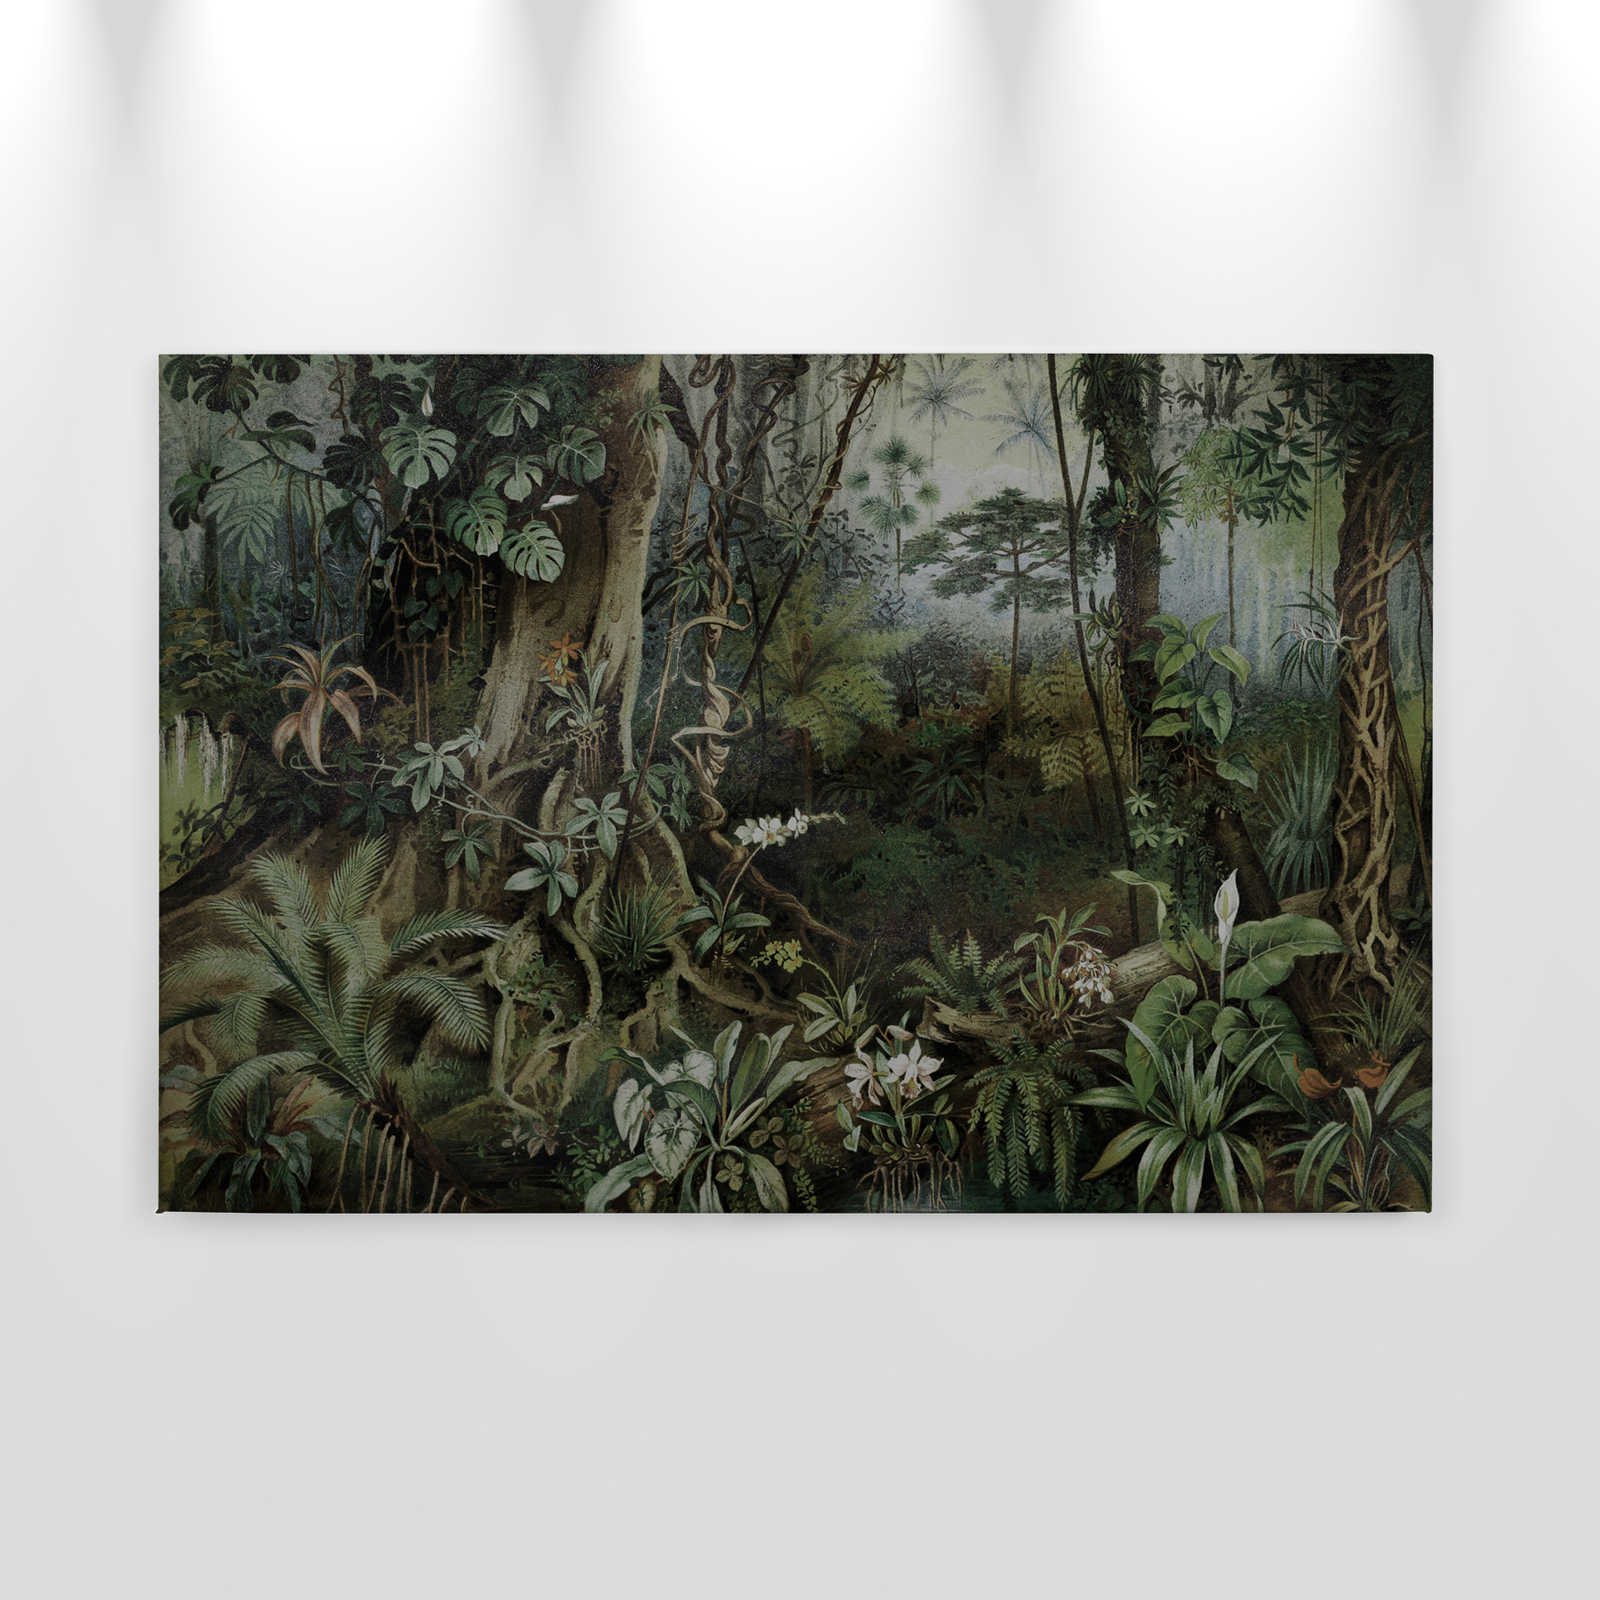             Quadro su tela Jungle in stile disegno | pareti di Patel - 0,90 m x 0,60 m
        